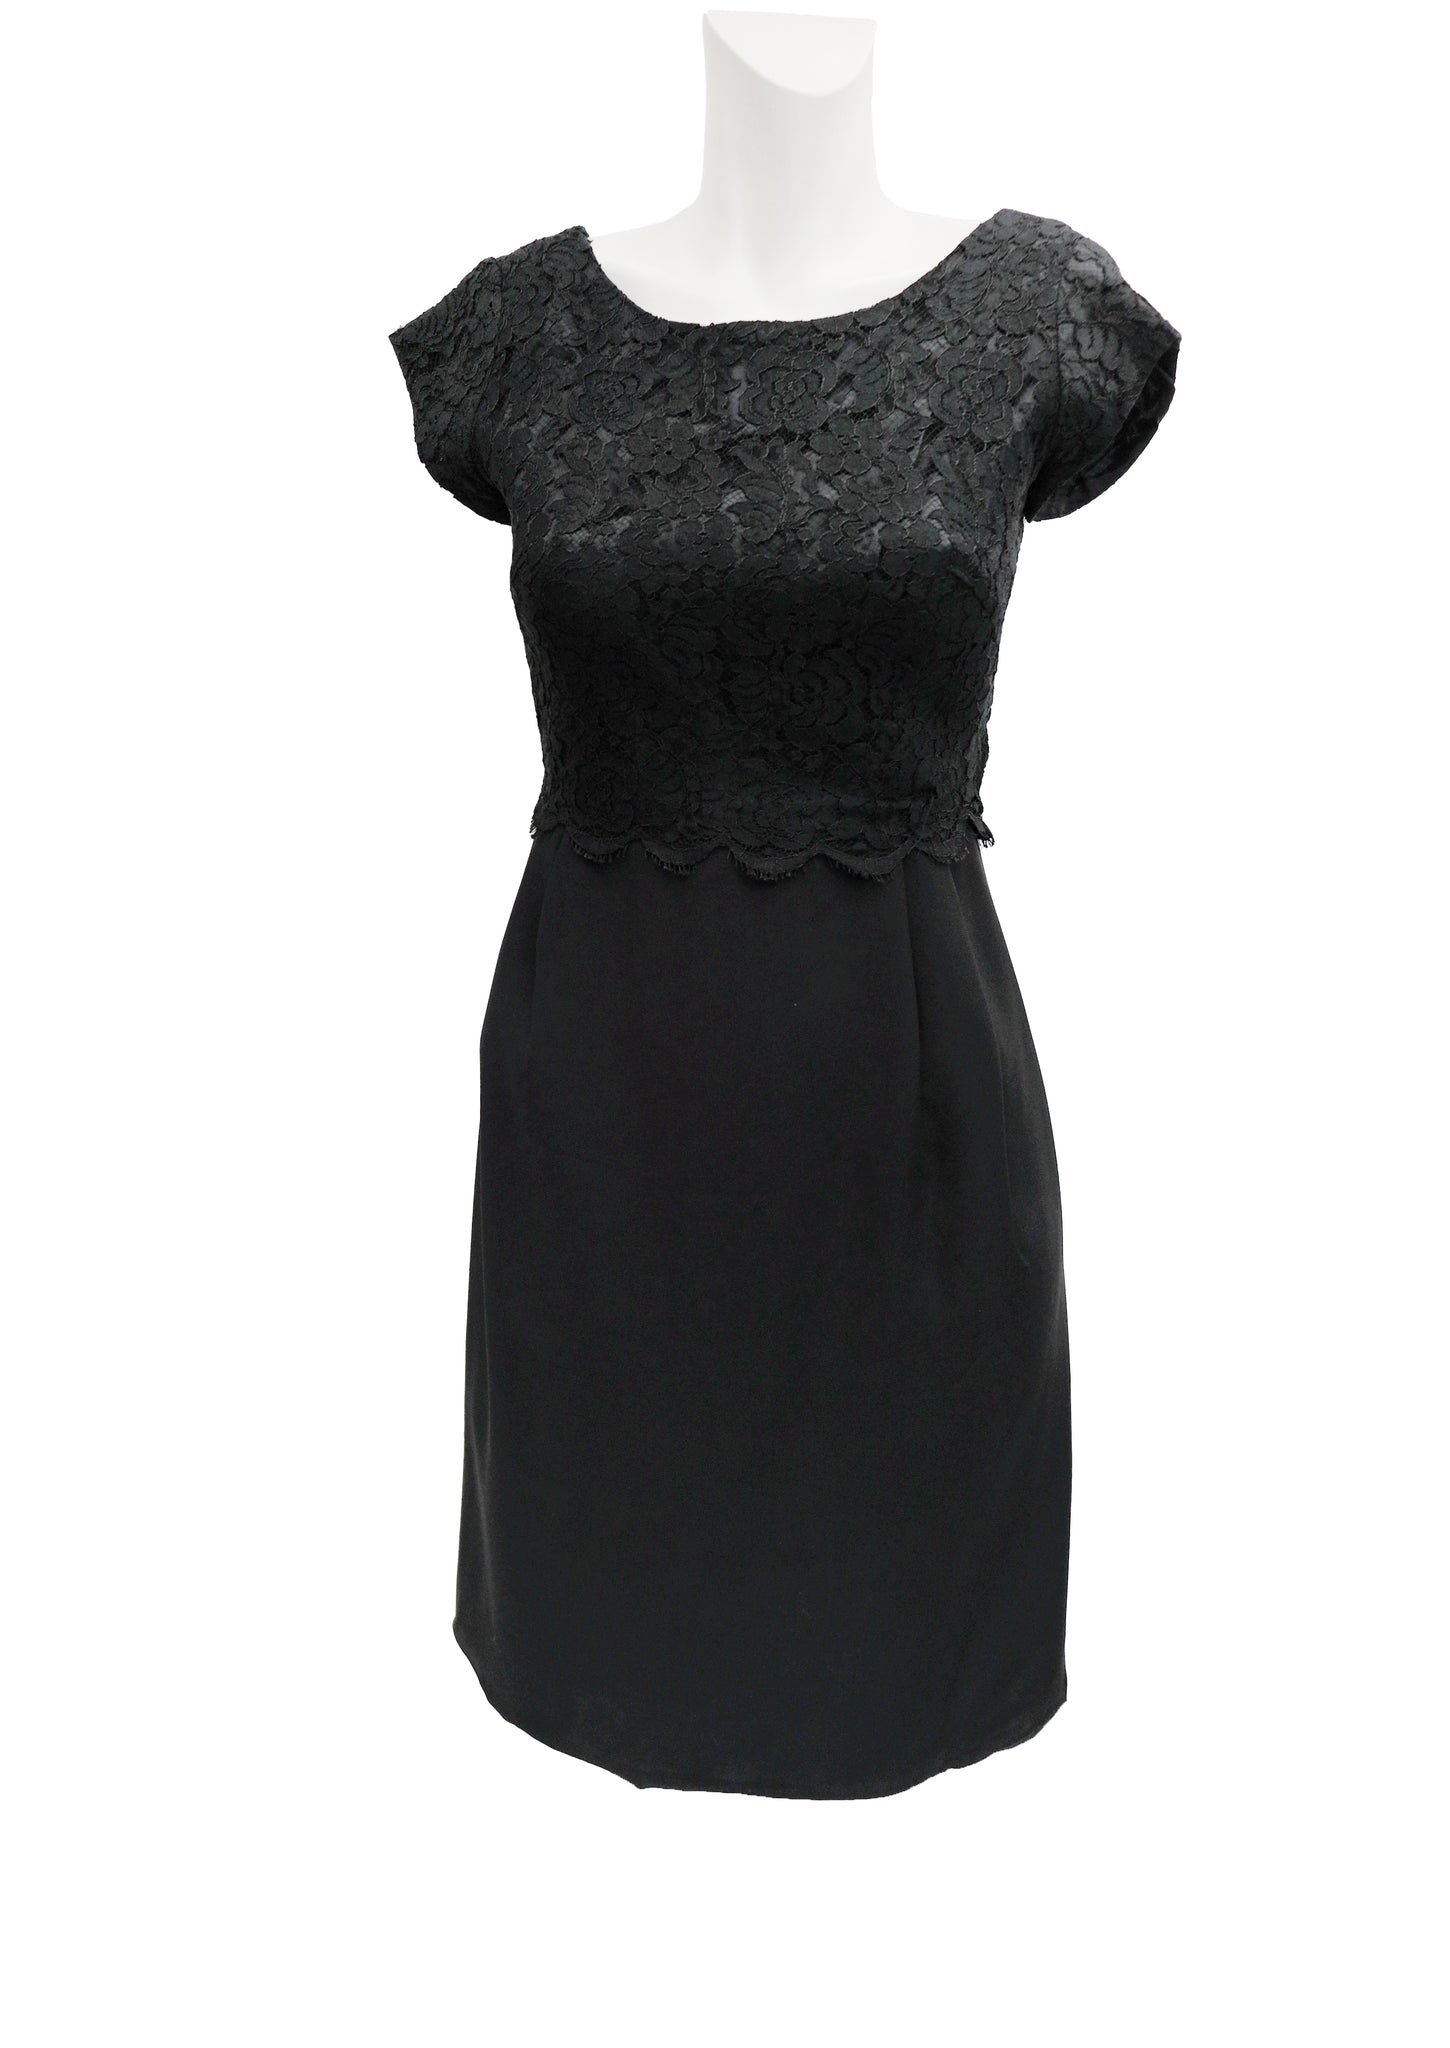 Vintage Little Black Dress with Lace Bodice, UK8 – Menage Modern Vintage